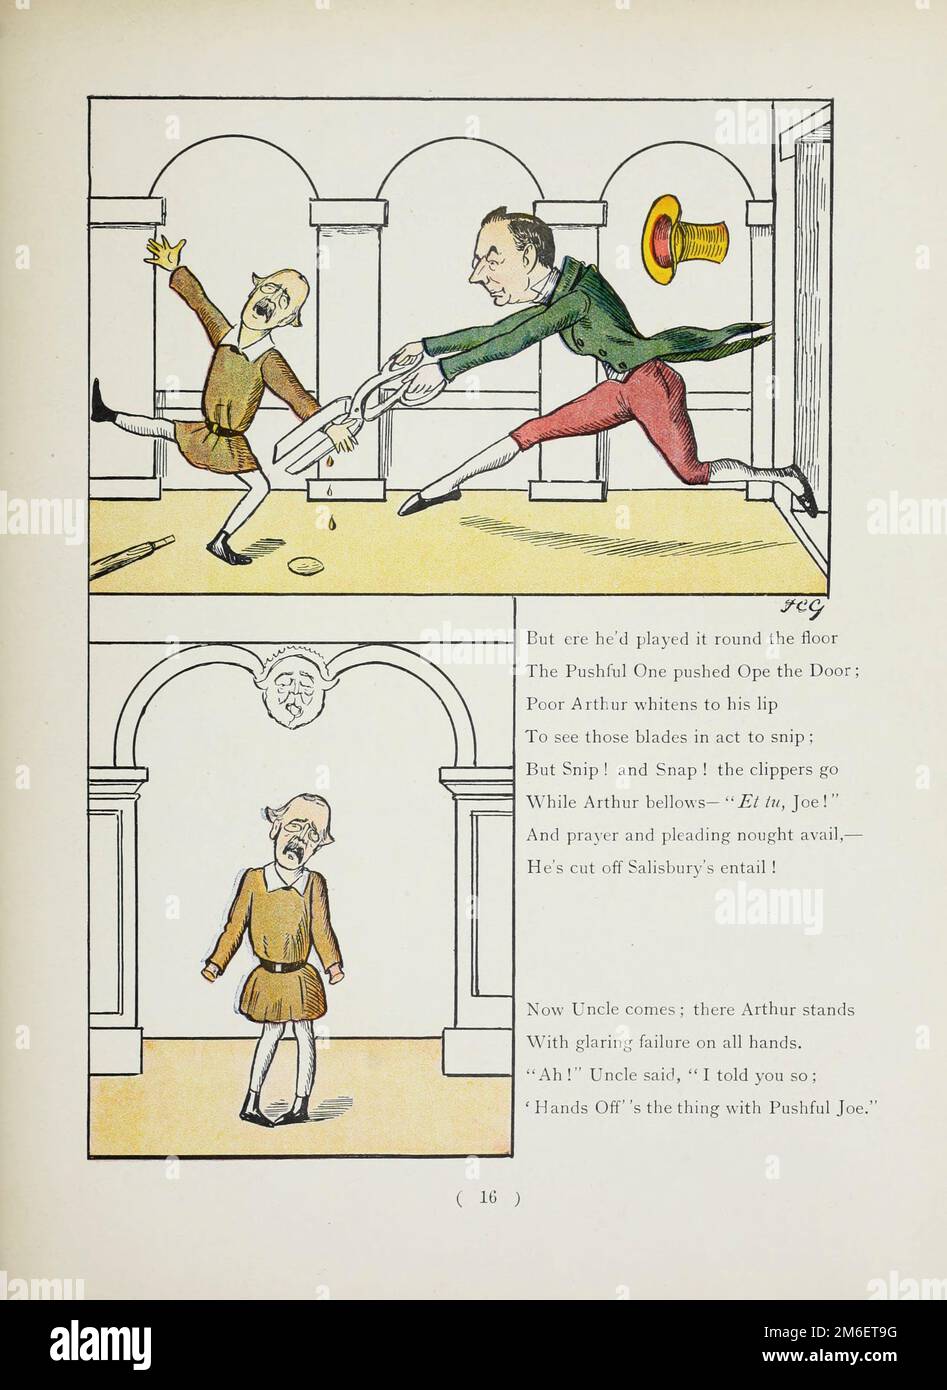 The Story of the Pushful One aus dem satirischen Buch " The Political Struwwelpeter " von Harold Begbie, 1871-1929, illustriert von Francis Carruthers Gould, 1844-1925, veröffentlicht in London : Grant Richards 1899 Stockfoto